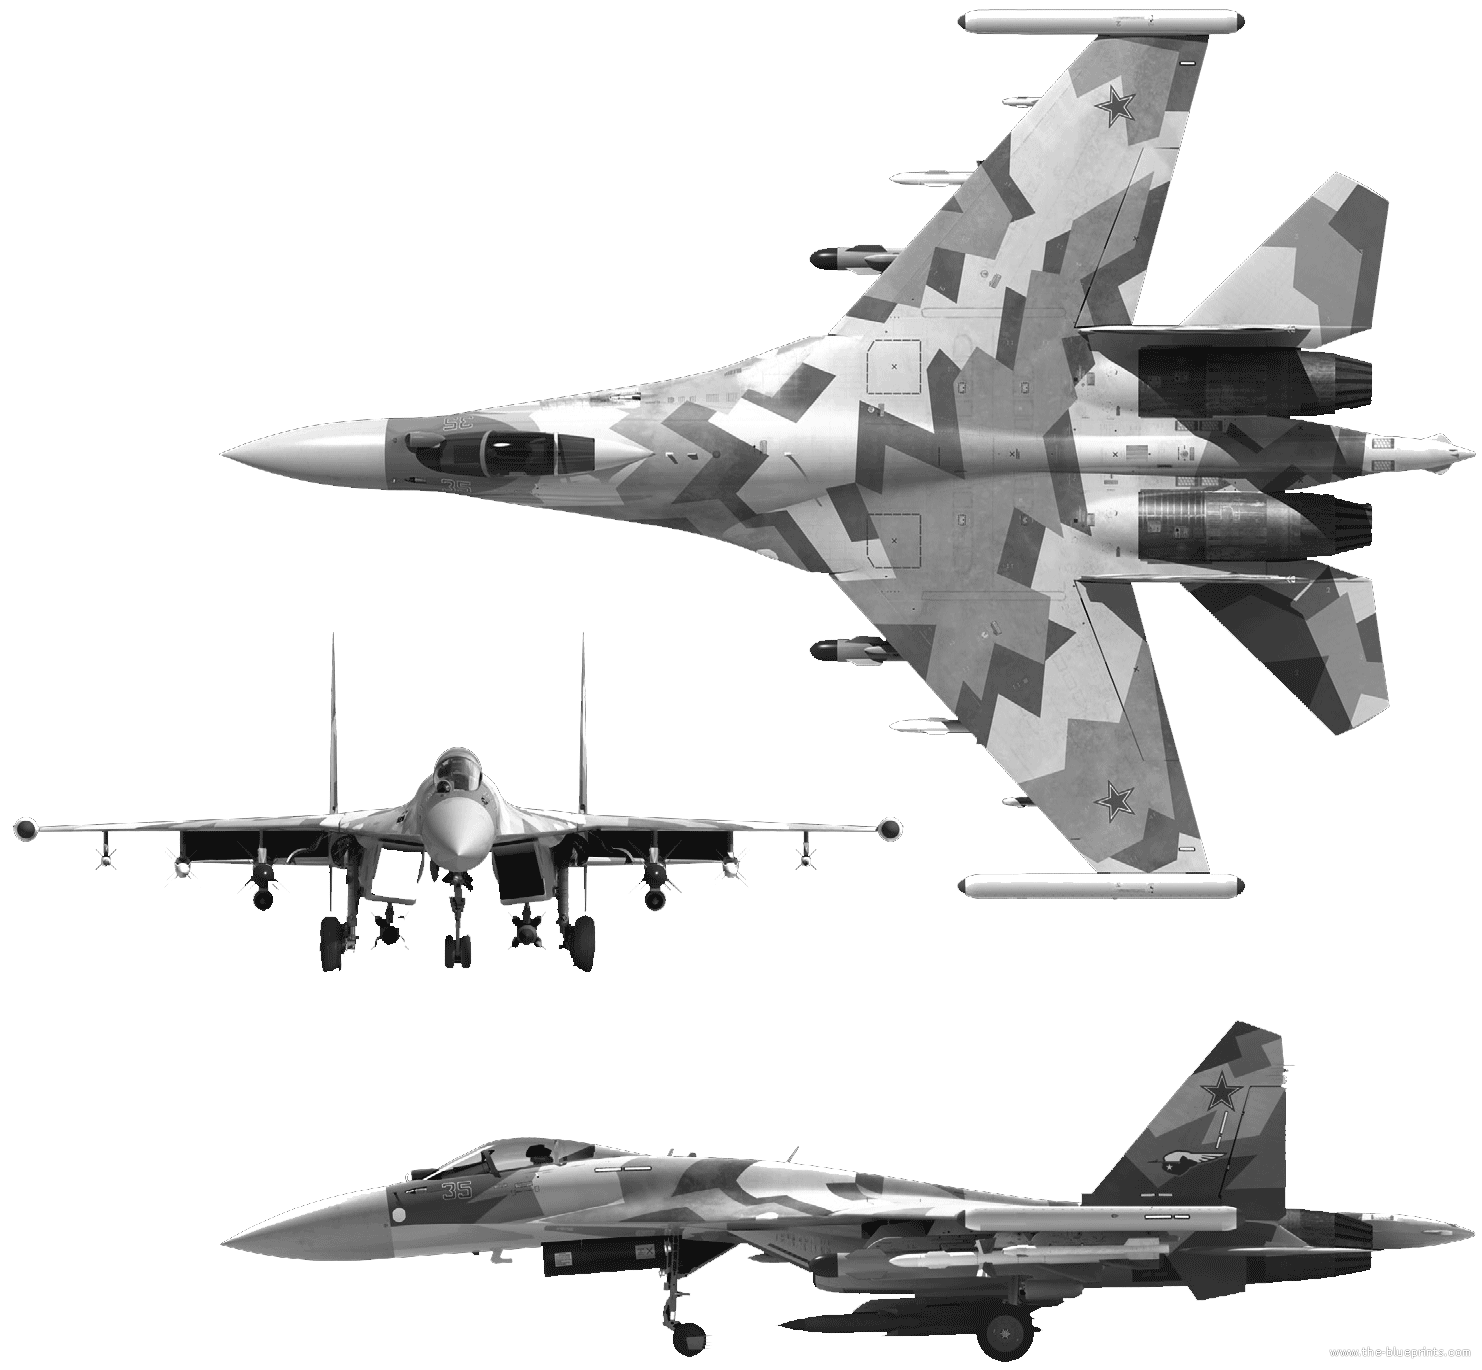 Mikoyan-Gurevich MiG-29 & Company Sukhoi-su-35bm